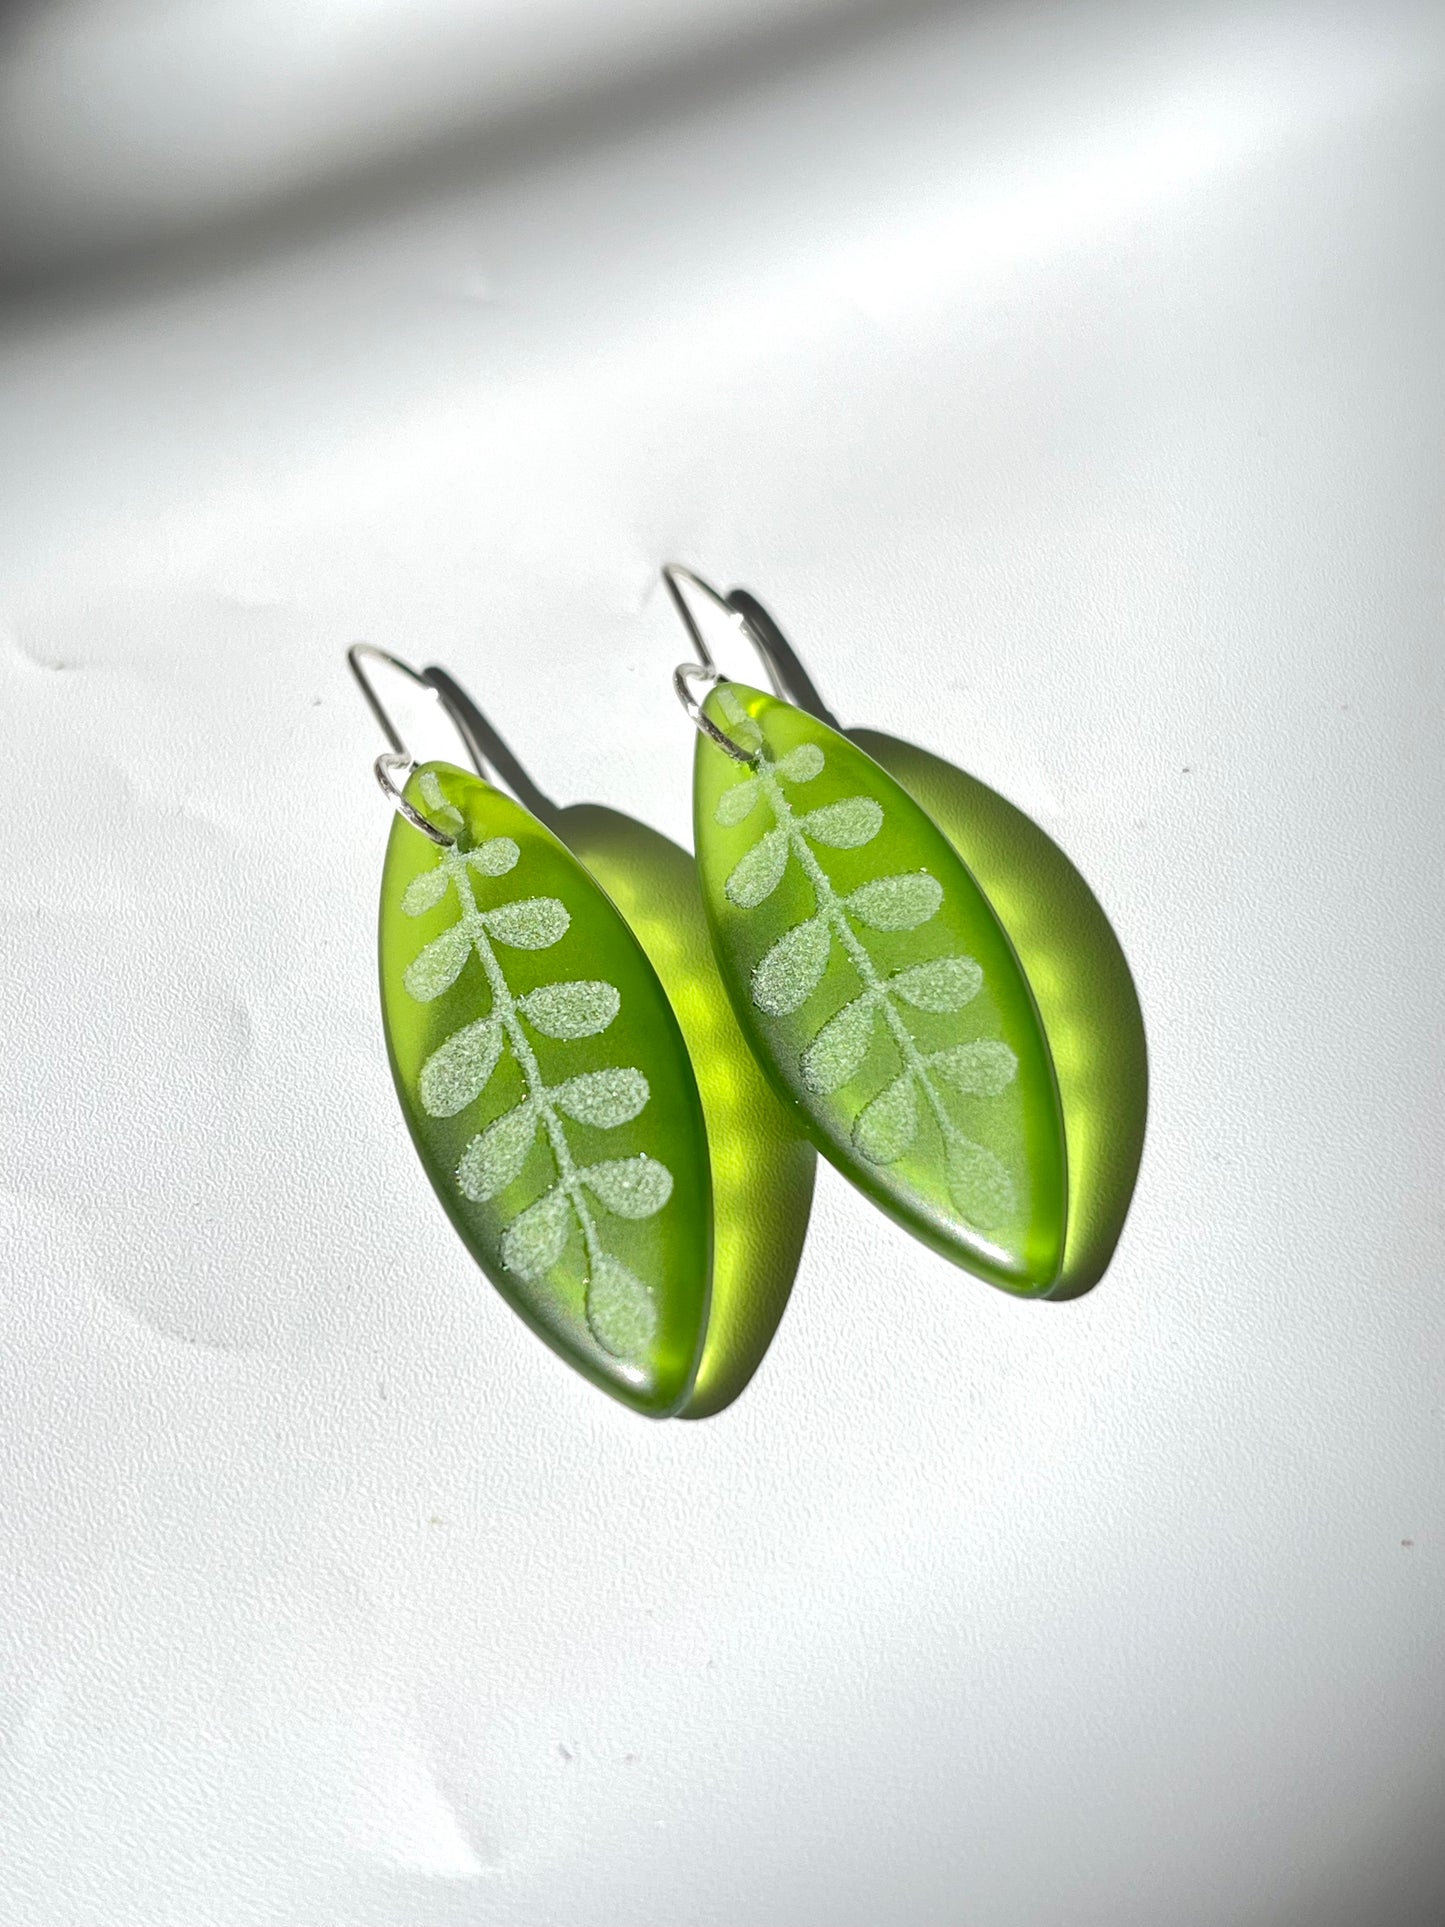 Kowhai Leaf Earrings - Green Glass